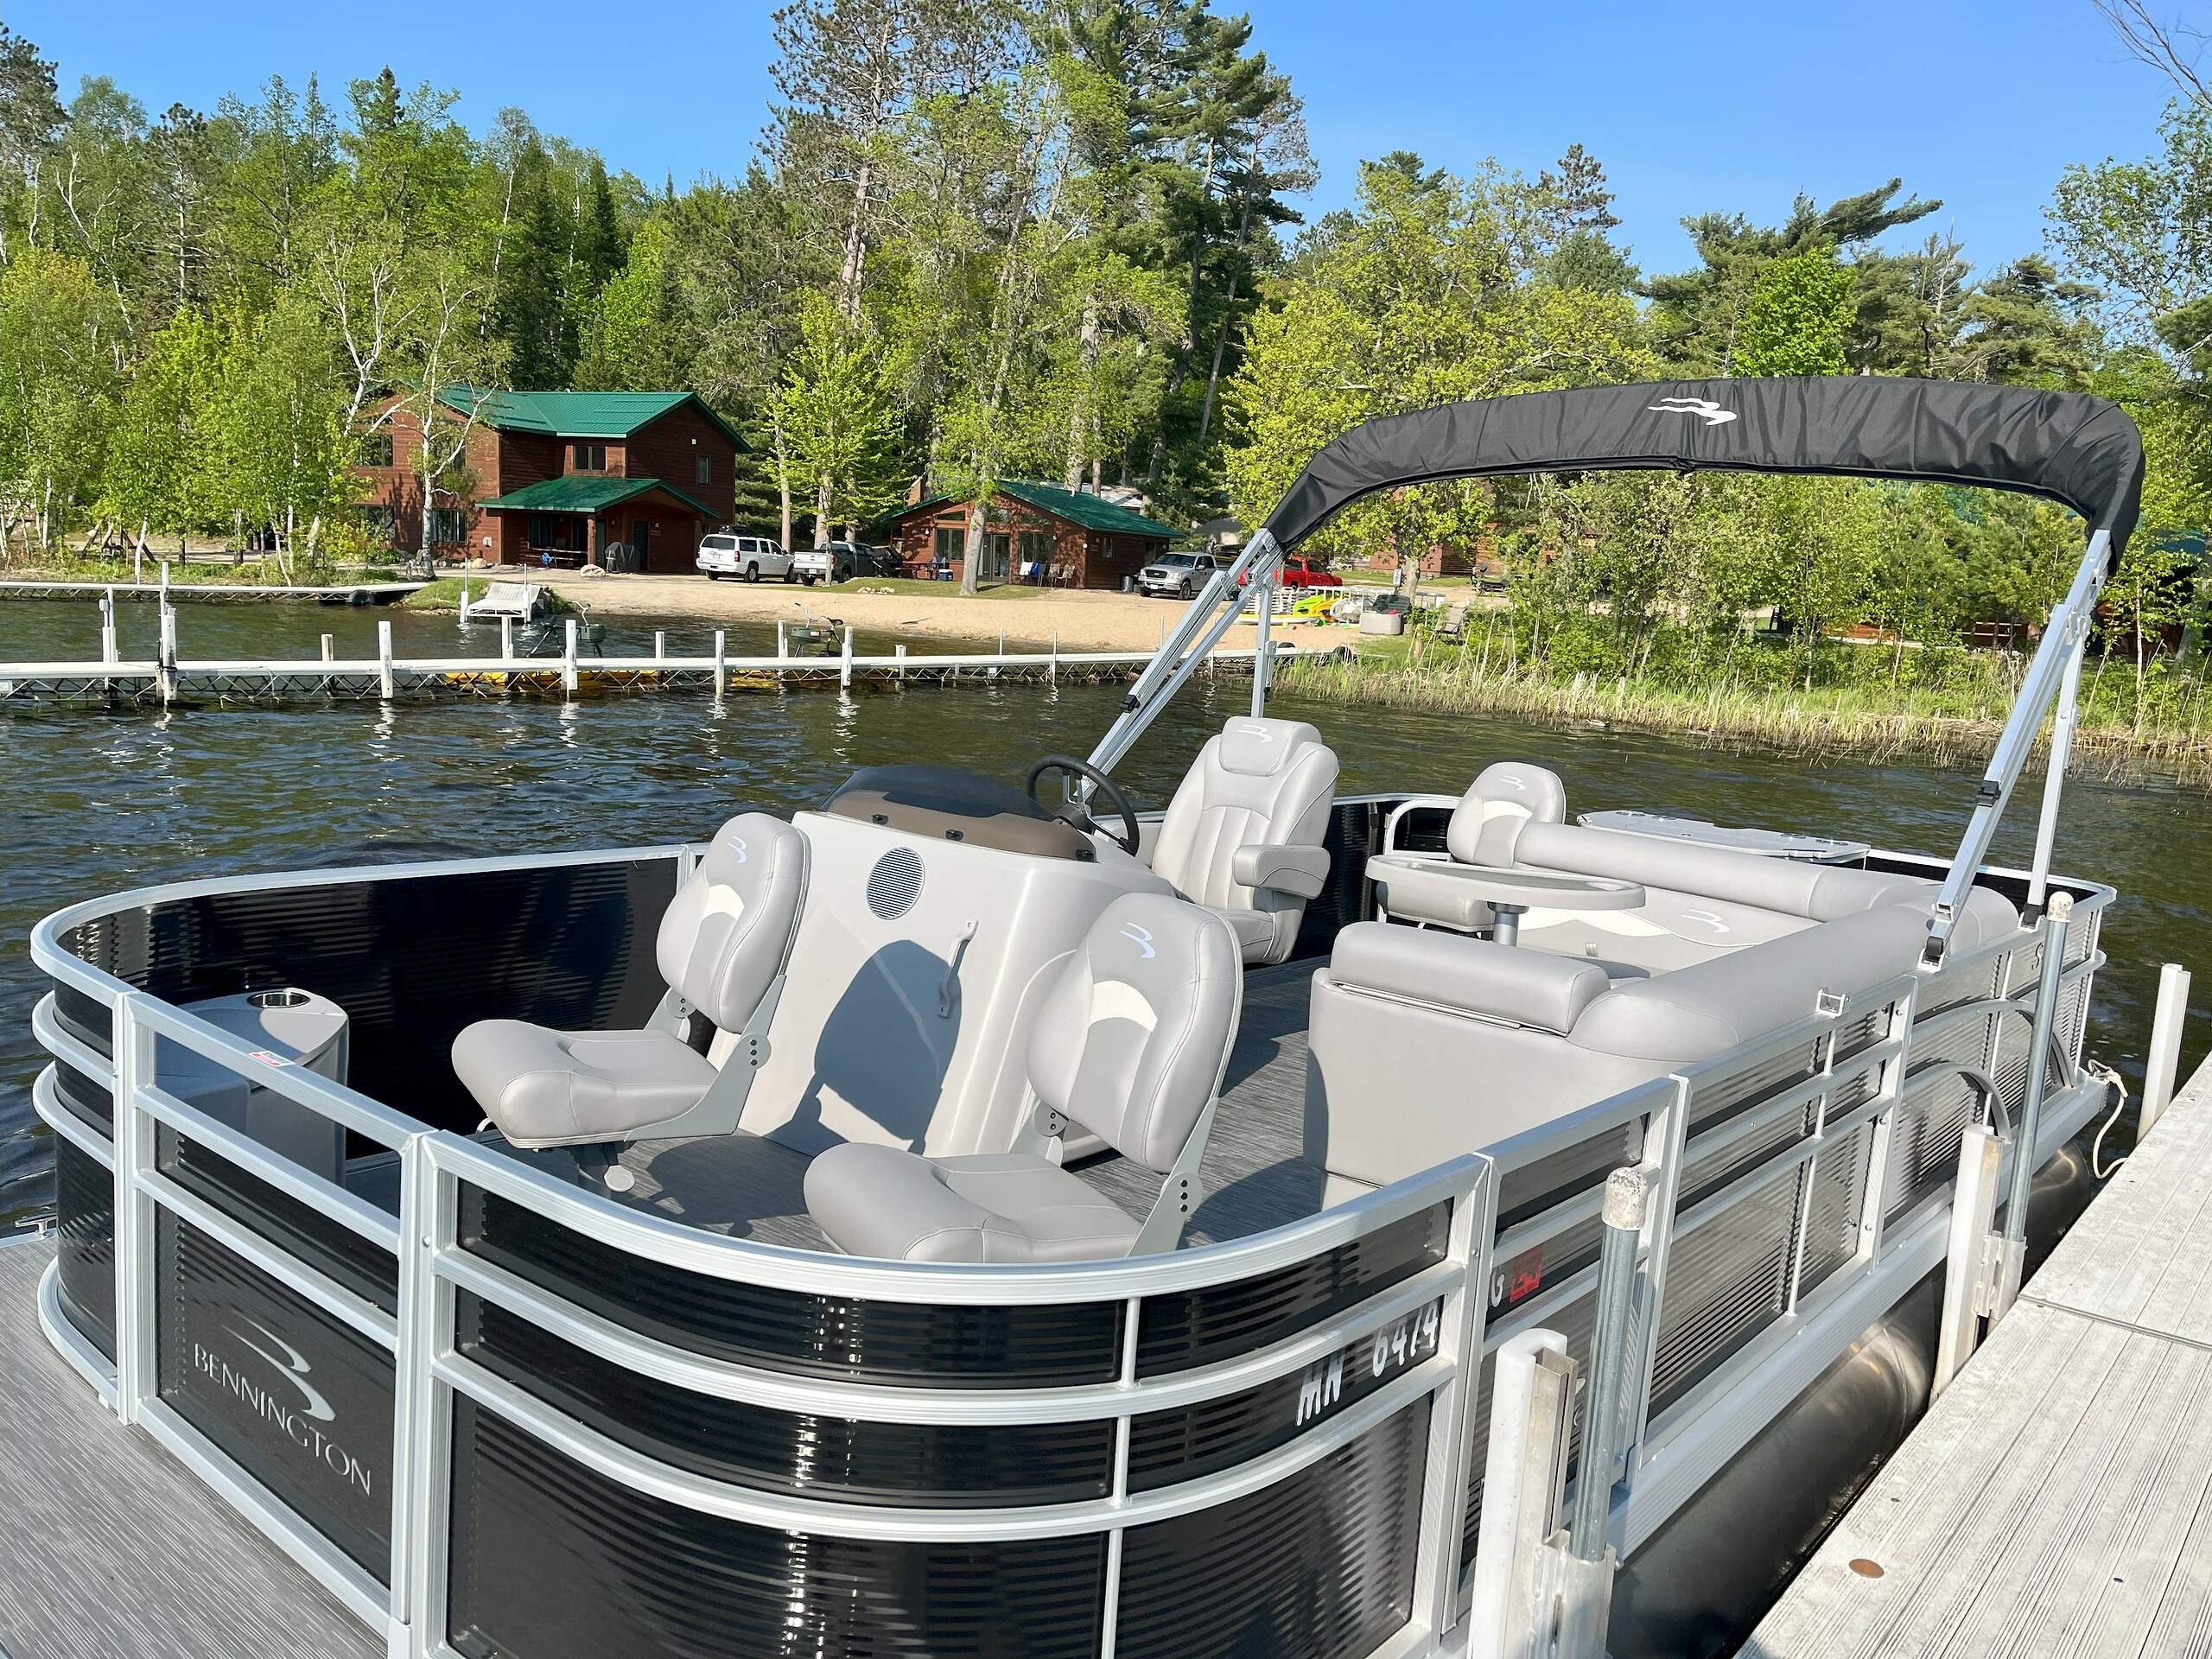 Photo of 2022 Bennington pontoon for rent at Wildwood Resort